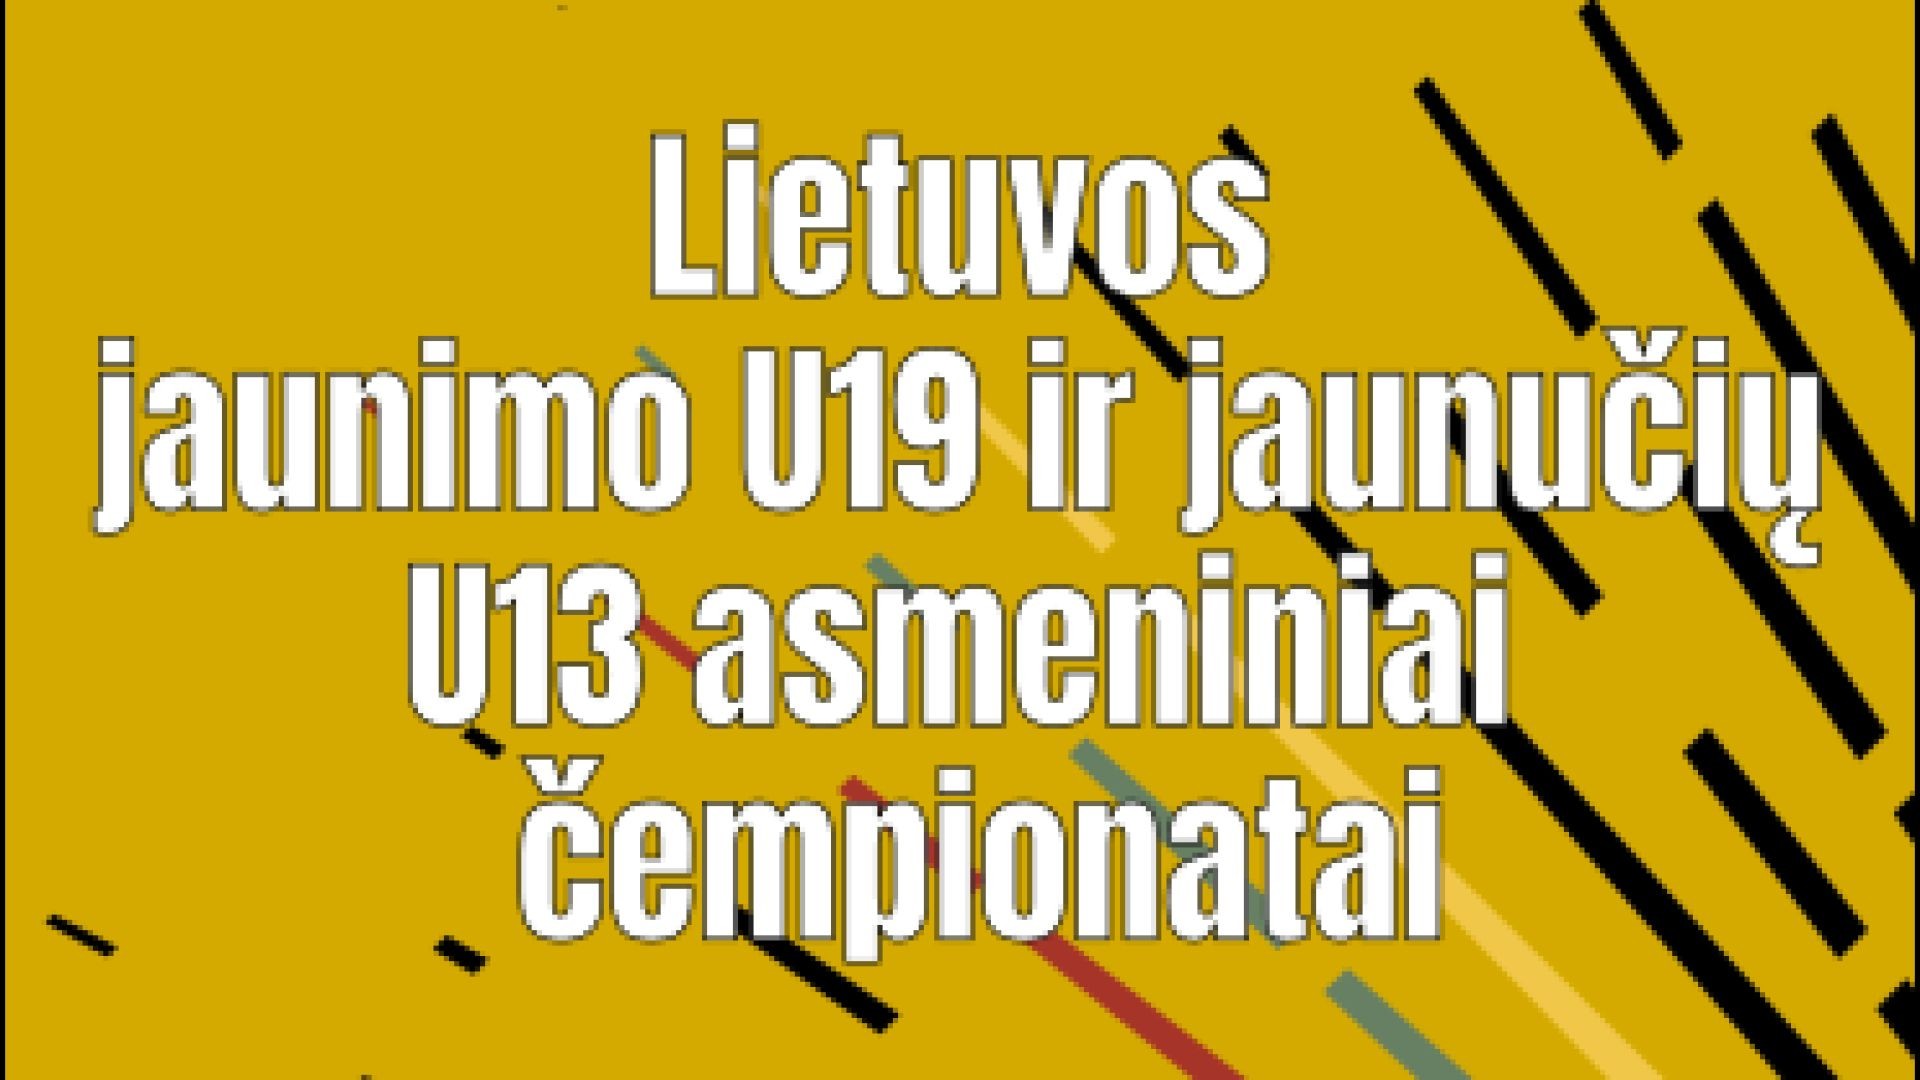 4 aikštė | 1 diena | Lietuvos U19 ir U13 asmeniniai čempionatai